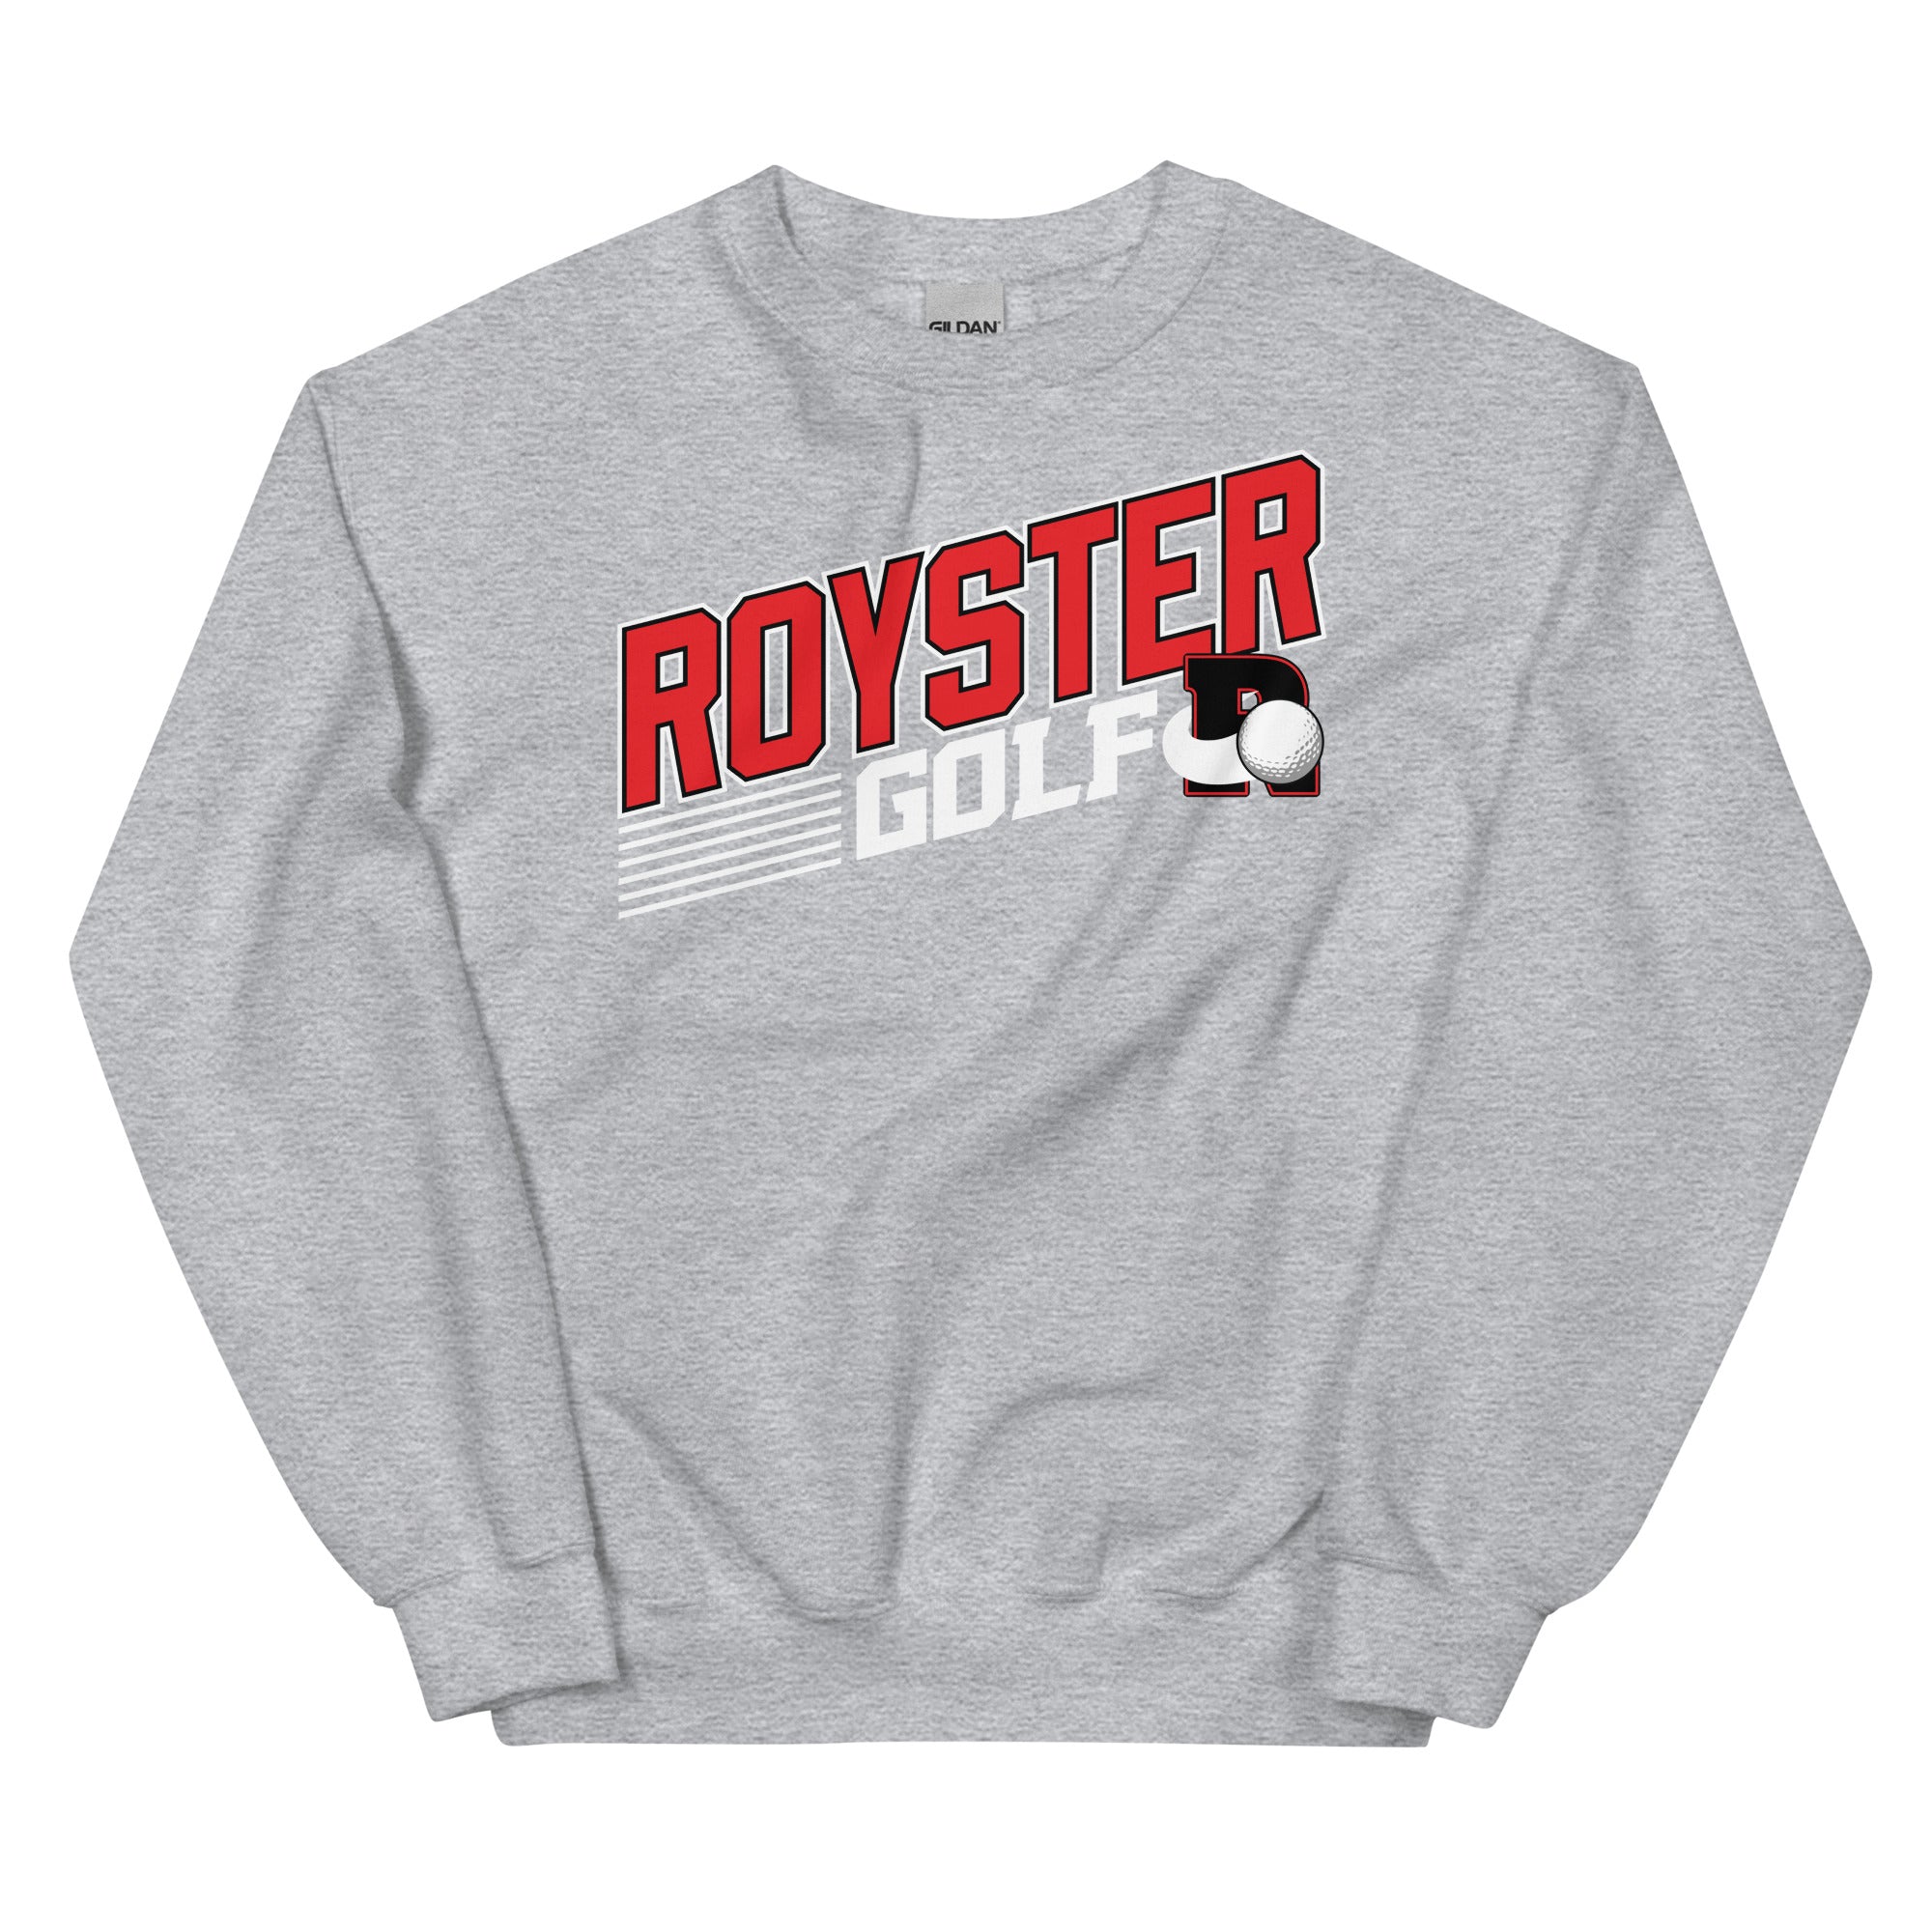 Royster Rockets Golf Unisex Crew Neck Sweatshirt